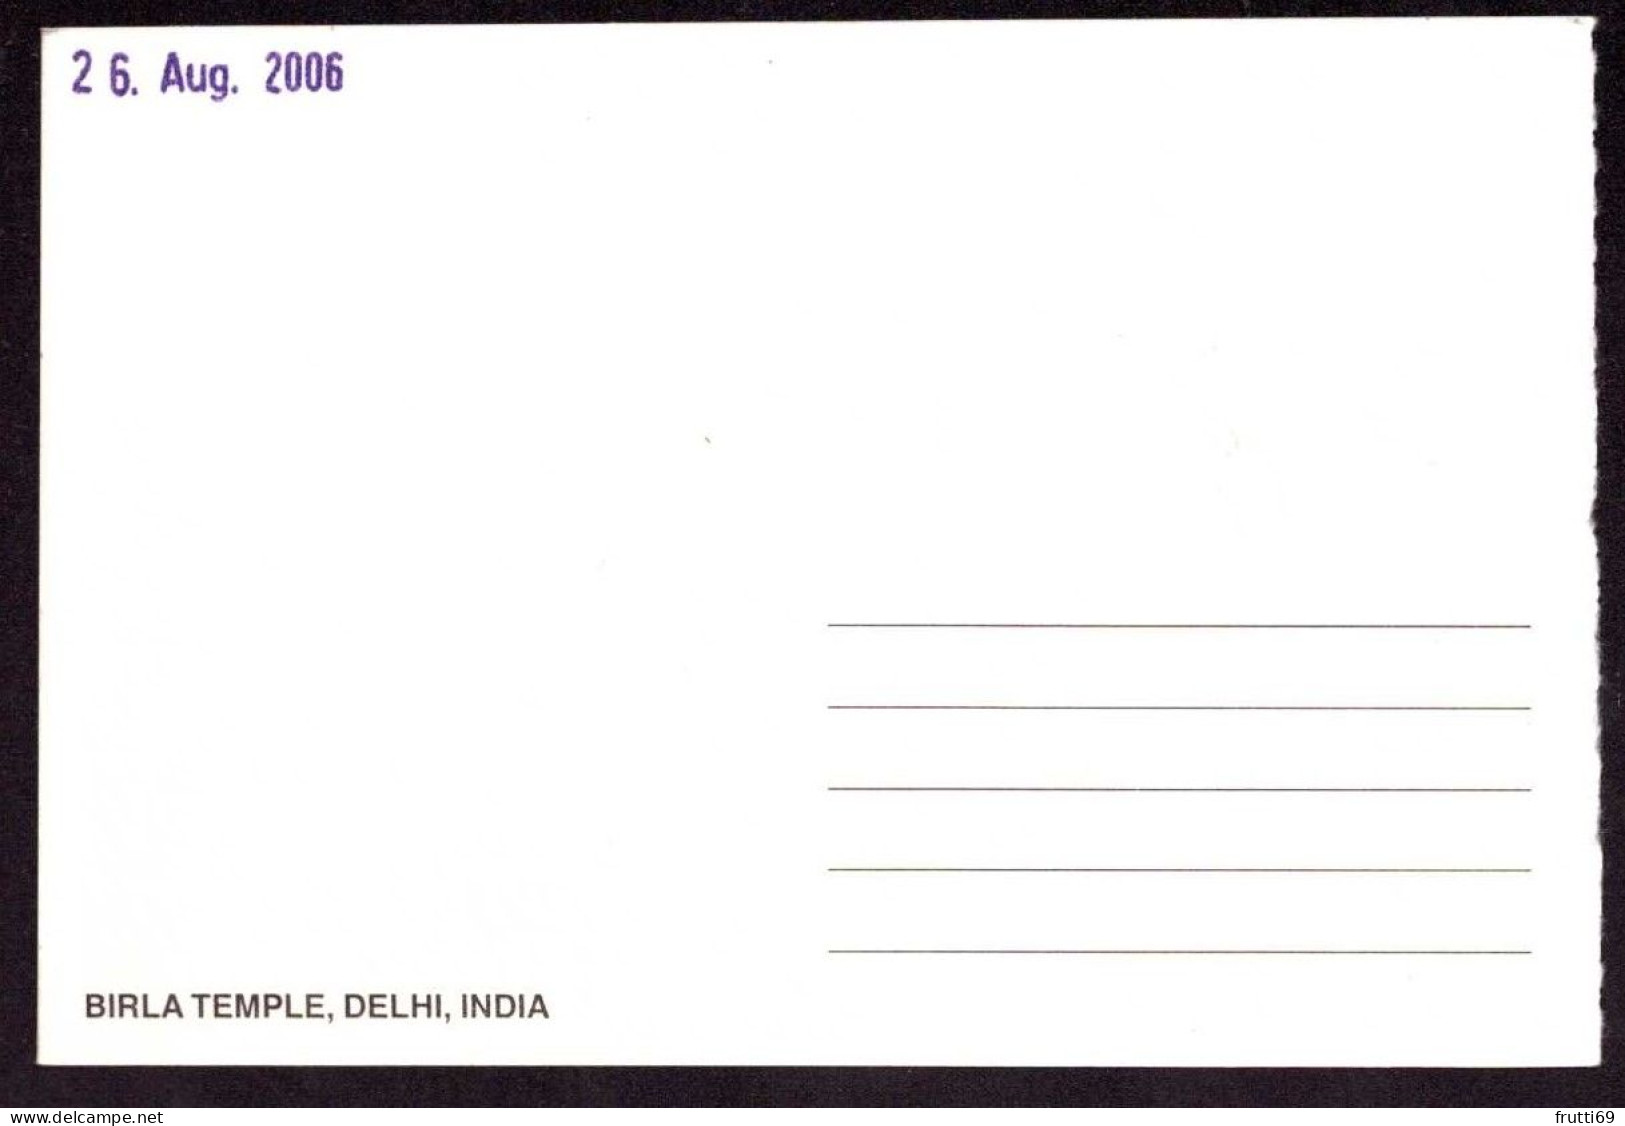 AK 212311 INDIA - Delhi - Birla Temple - India